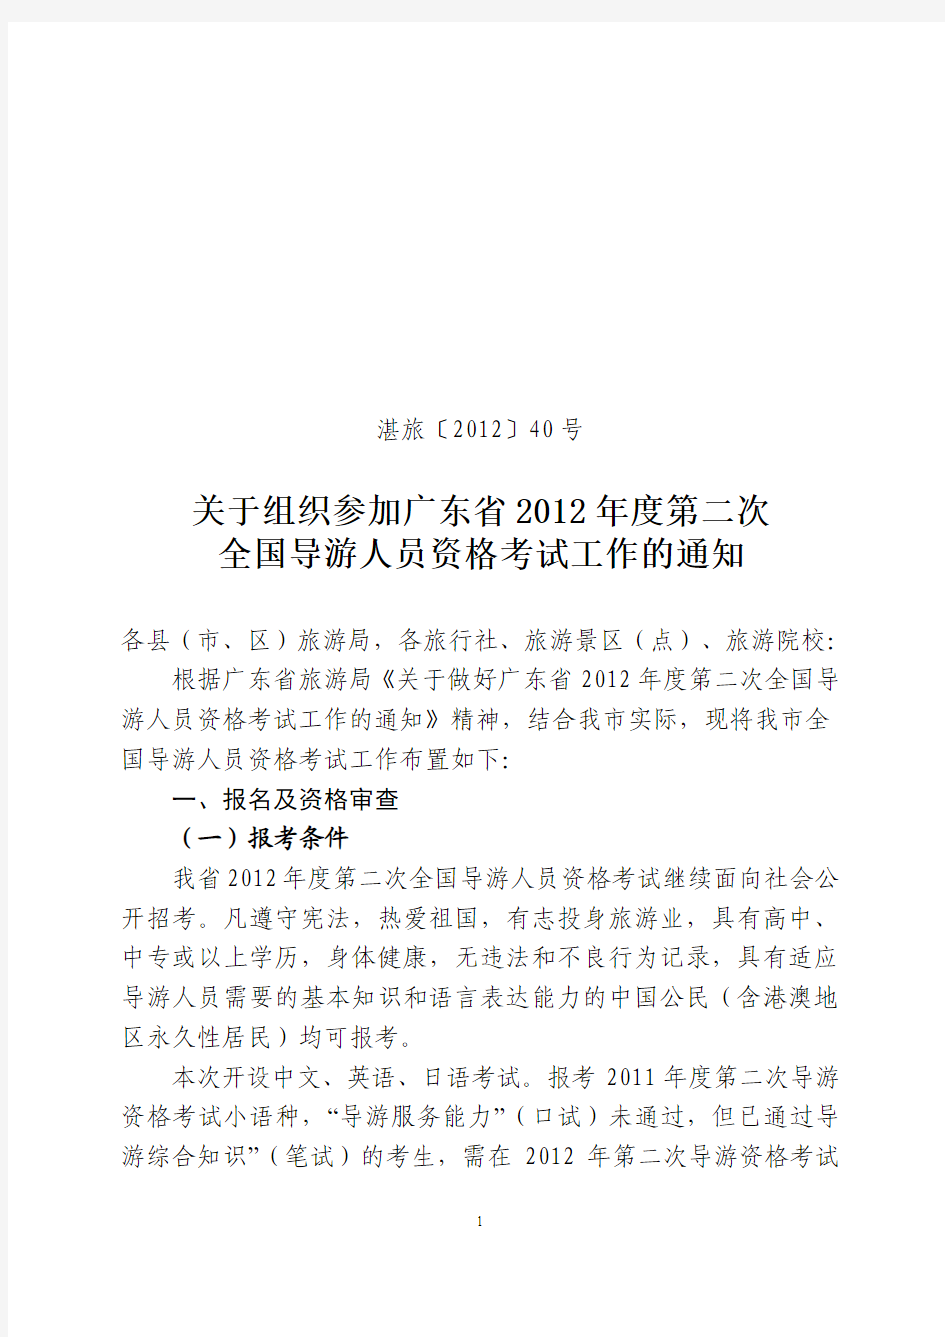 关于组织参加广东省2012年度第二次全国导游人员资格考试工作的通知